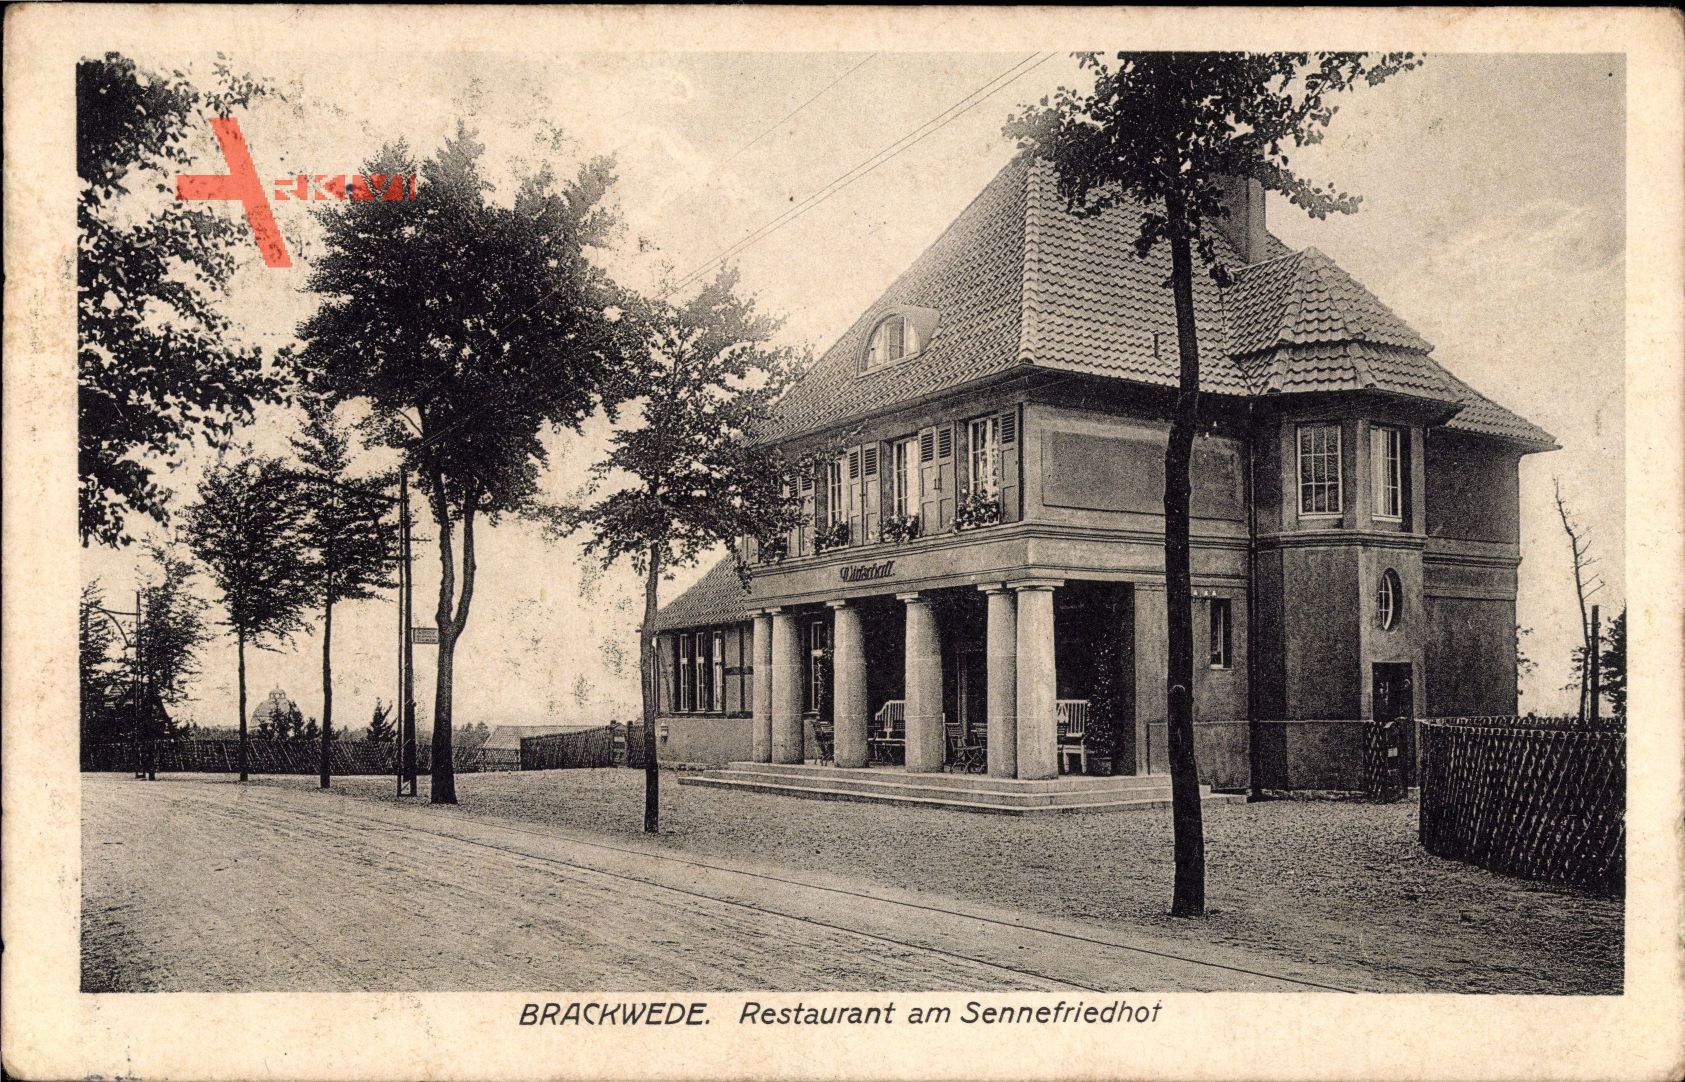 Bielefeld Brackwede in Nordrhein Westfalen, Restaurant am Sennefriedhof